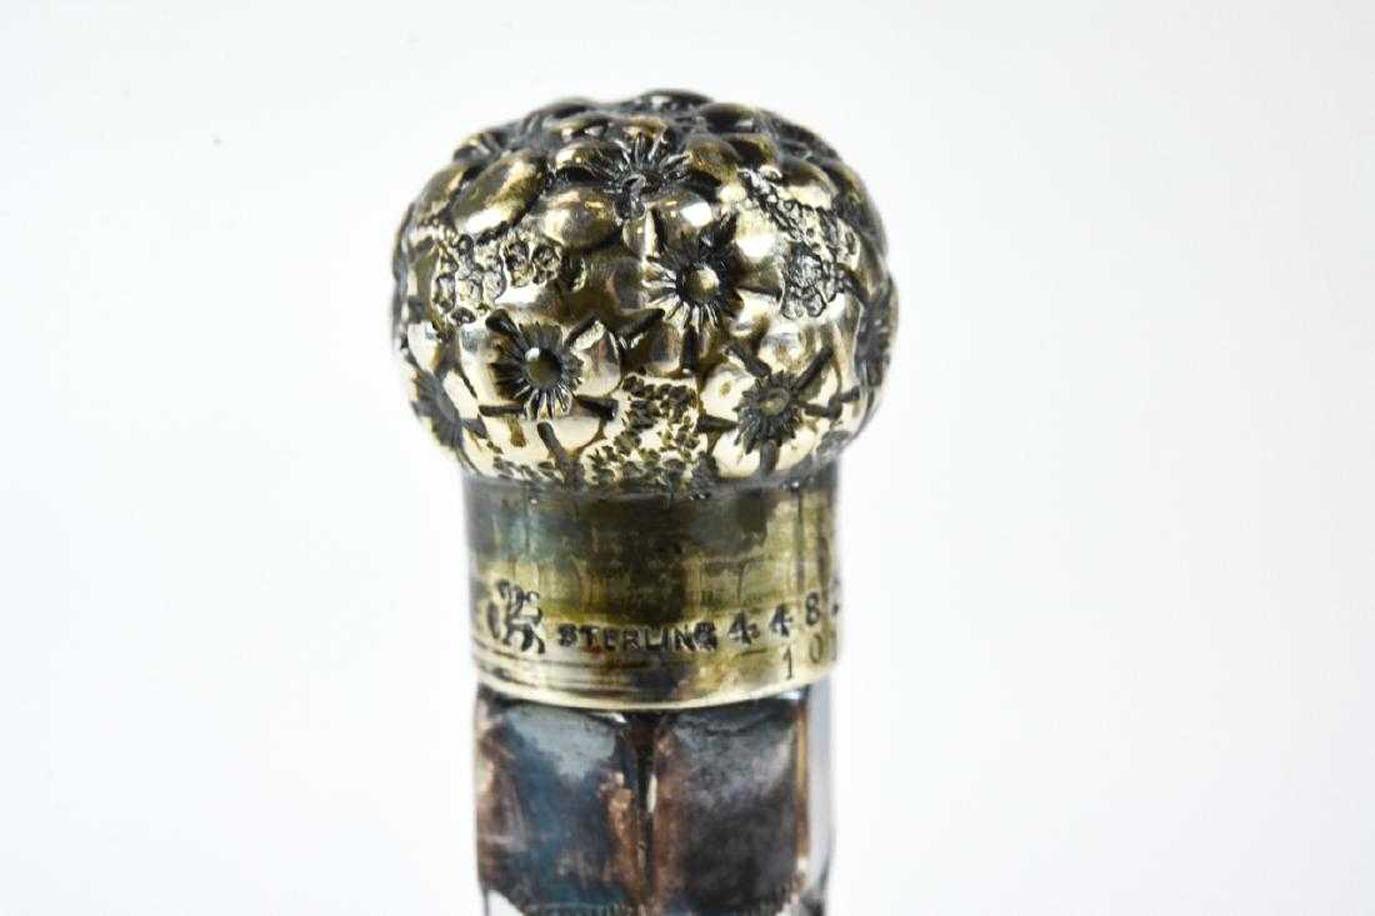 Le flacon de parfum en verre Art nouveau est orné d'un couvercle et d'un capuchon en filigrane d'argent sterling anglais (estampillé et avec un lion rampant). Le design reflète la période Art nouveau de la fin du XIXe siècle et du début du XXe